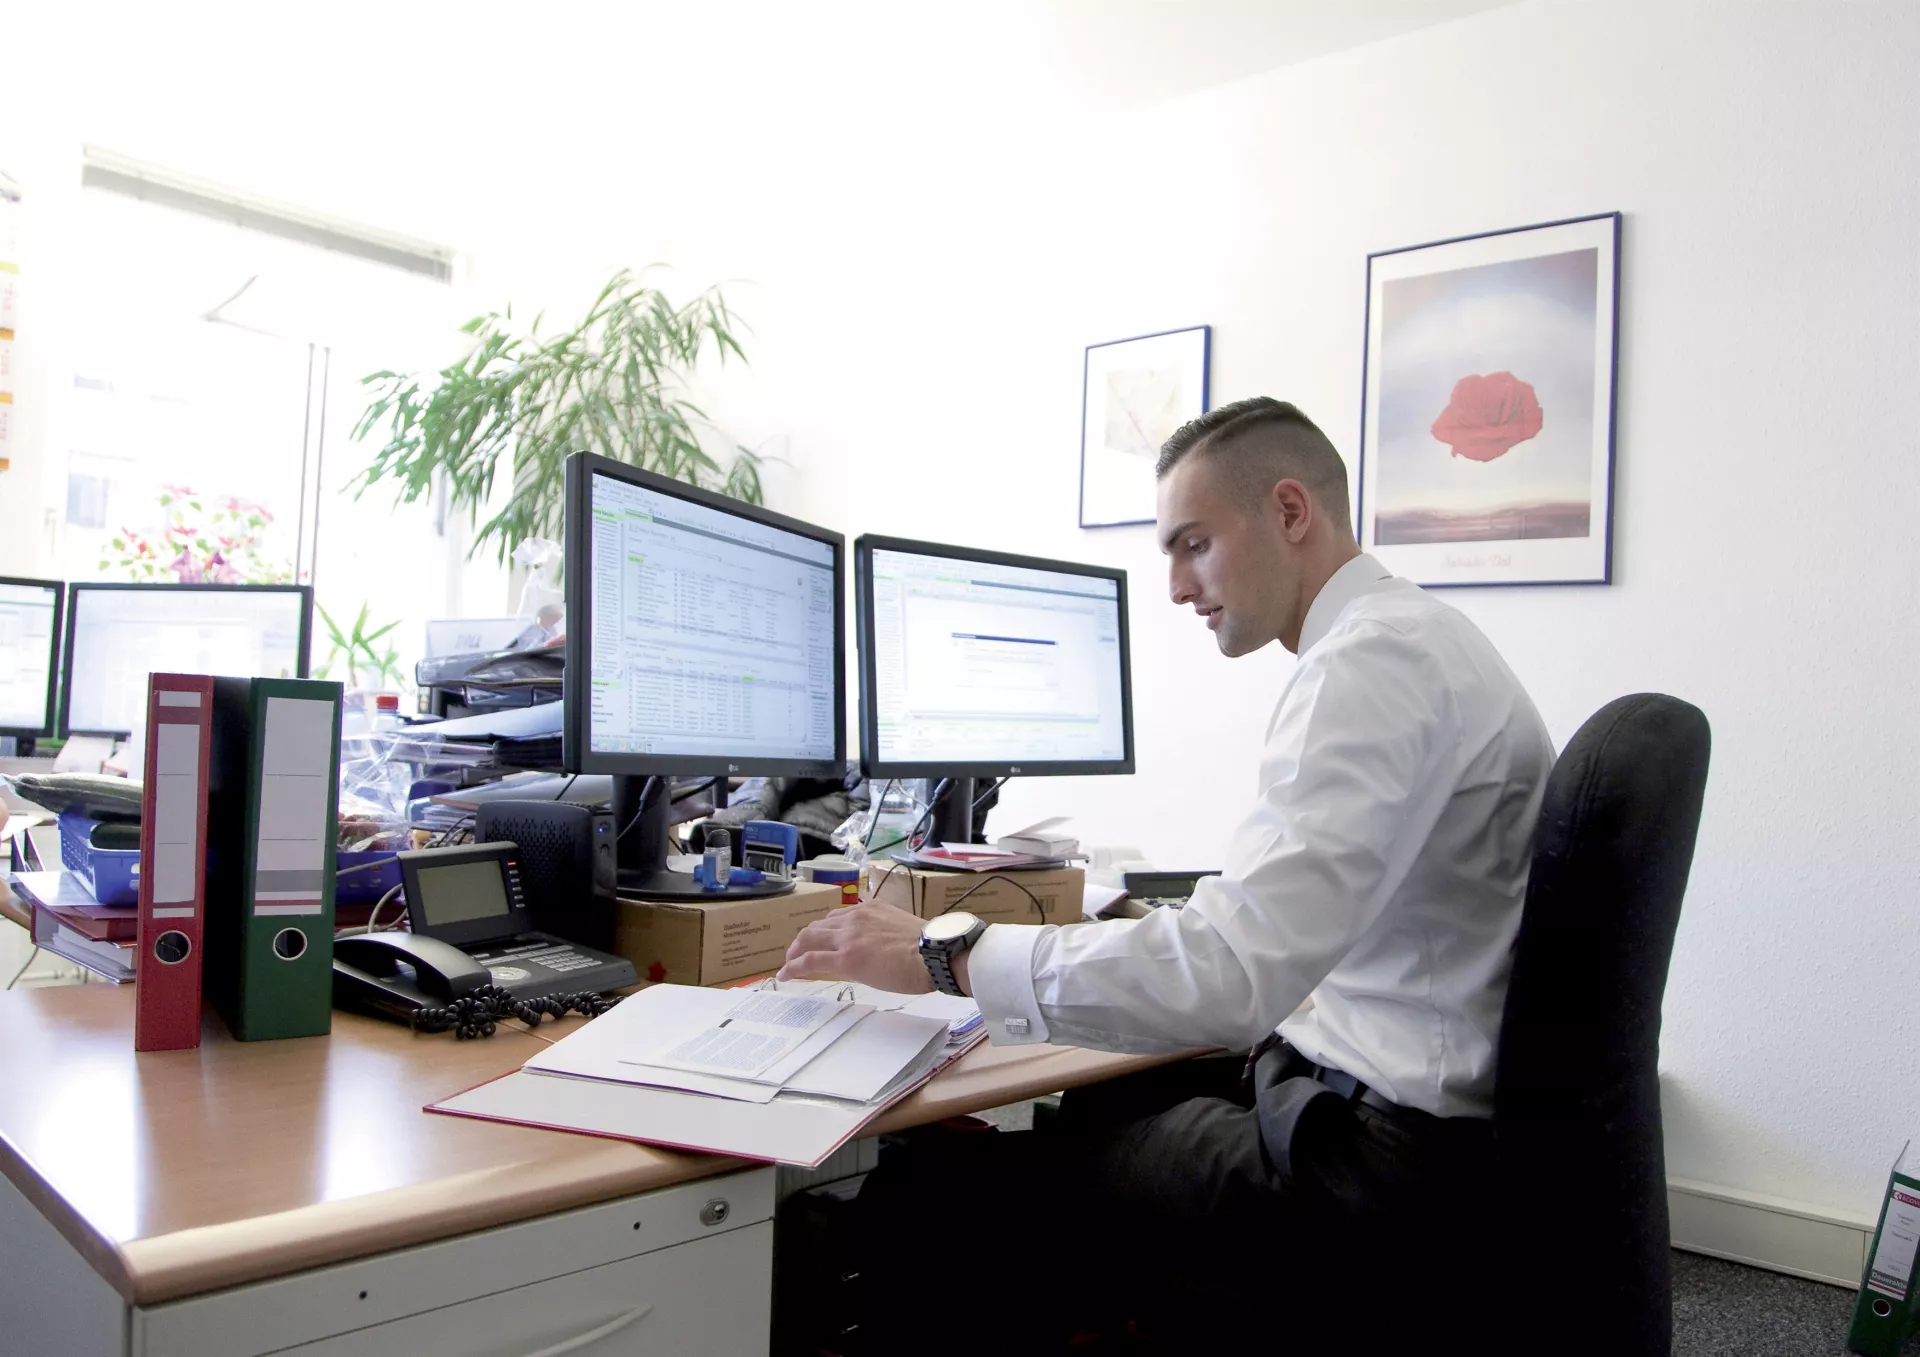 Ein junger Mann sitzt an einem Schreibtisch vor zwei PC-Monitoren und schaut auf einen Aktenordner.